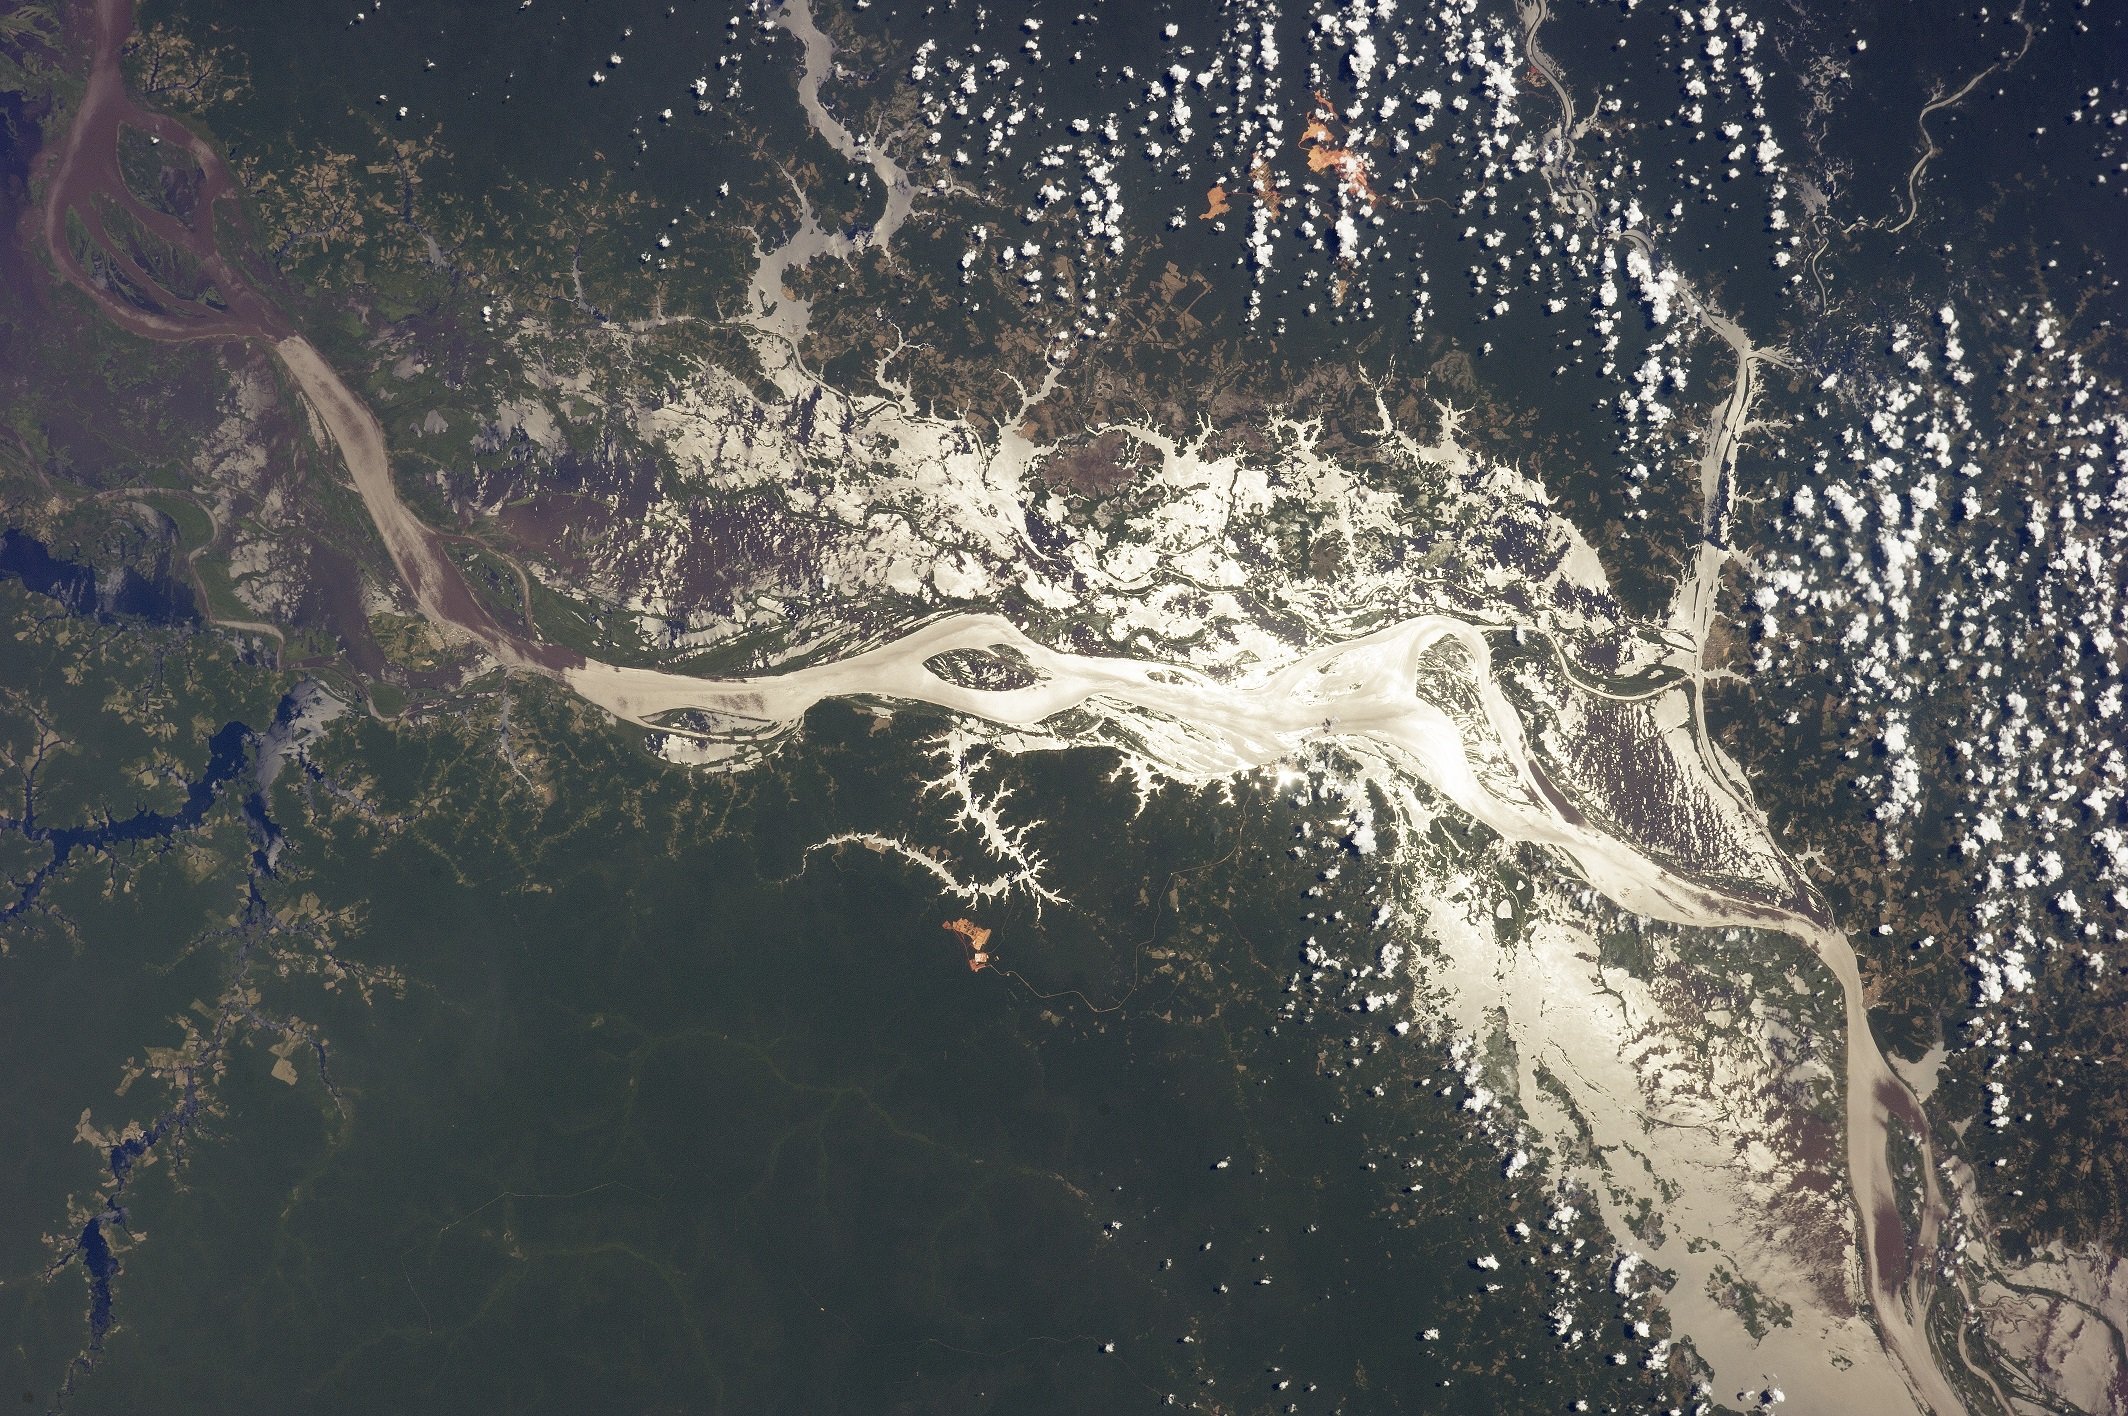 Река Амазонка из космоса